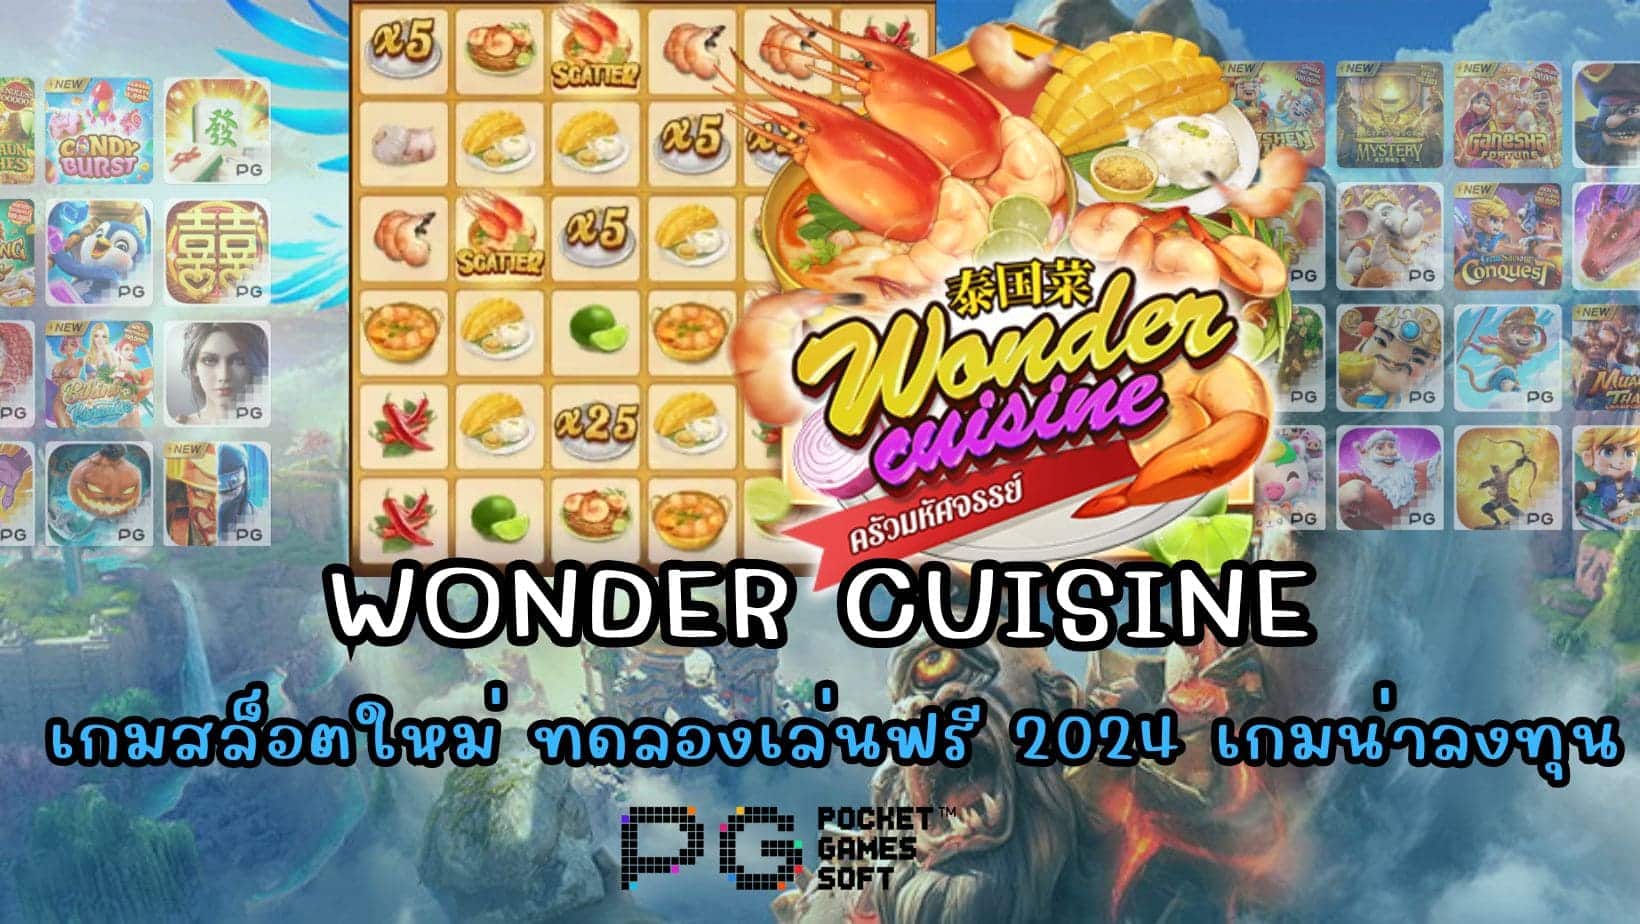 Wonder cuisine